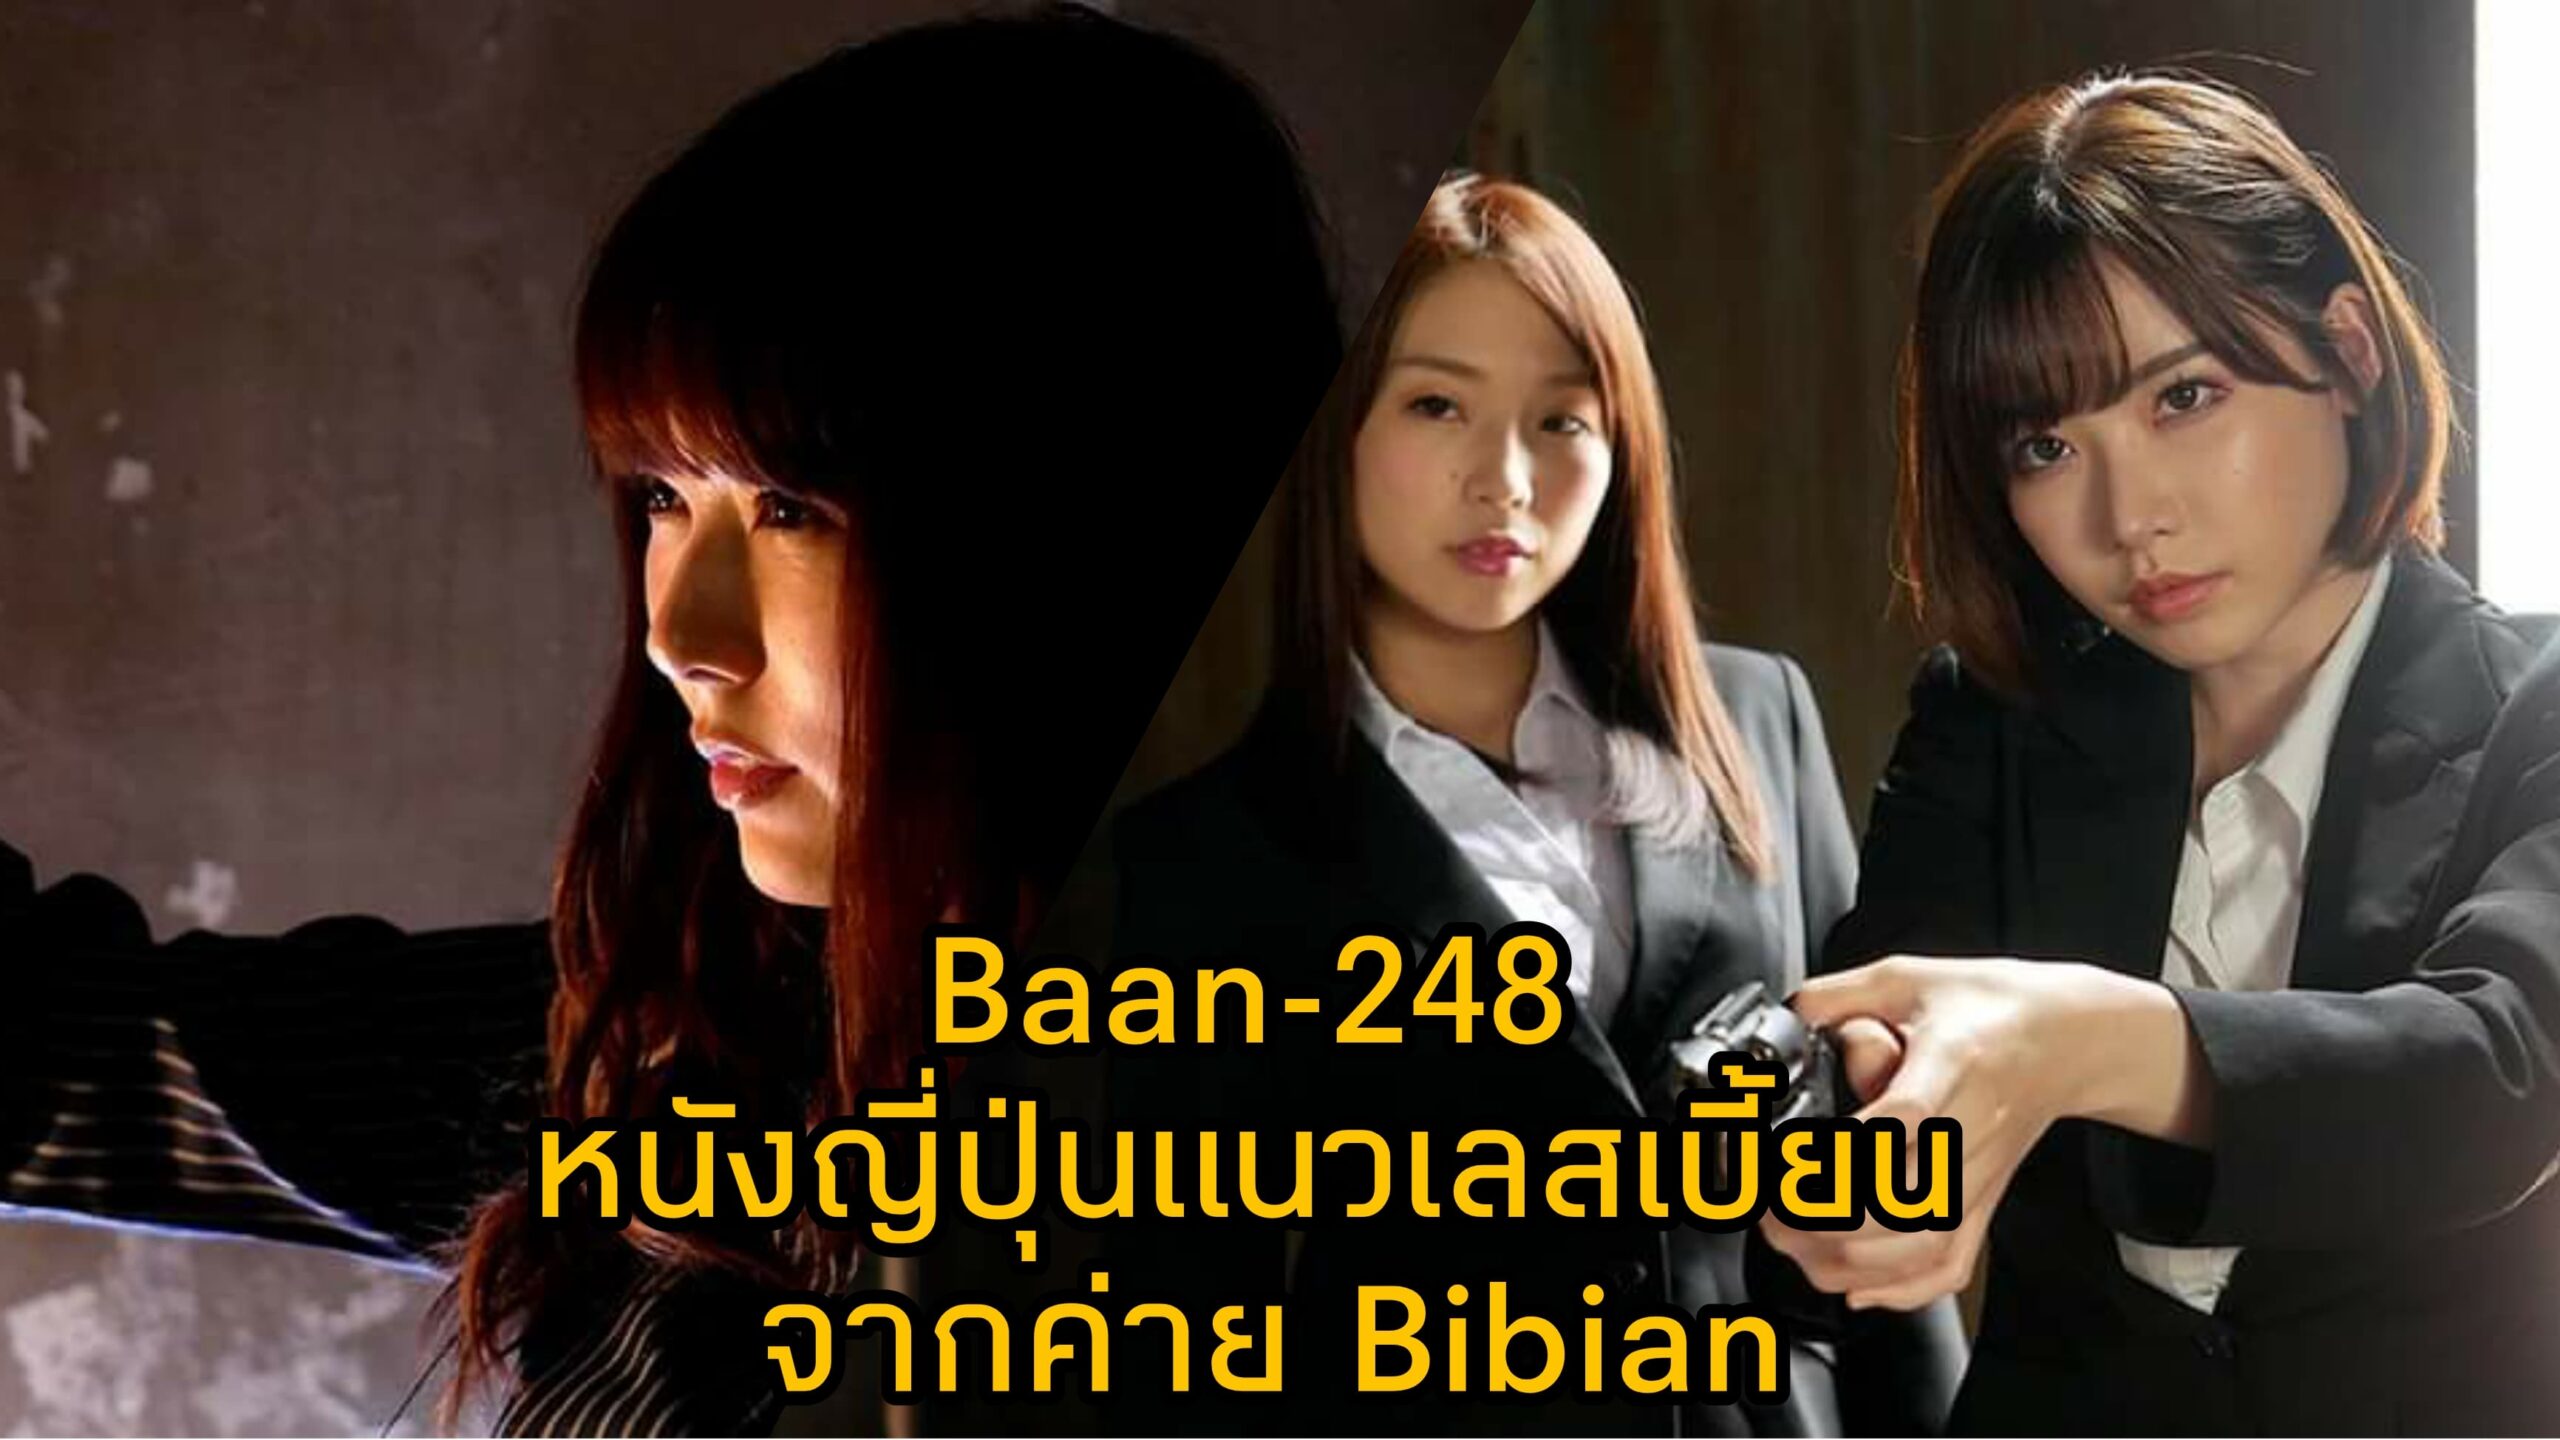 Bann-248 หนัง JAV แนวเลสเบี้ยน นำแสดงโดย 3 ตัวแม่แห่งวงการเอวี Eimi Fukada 3